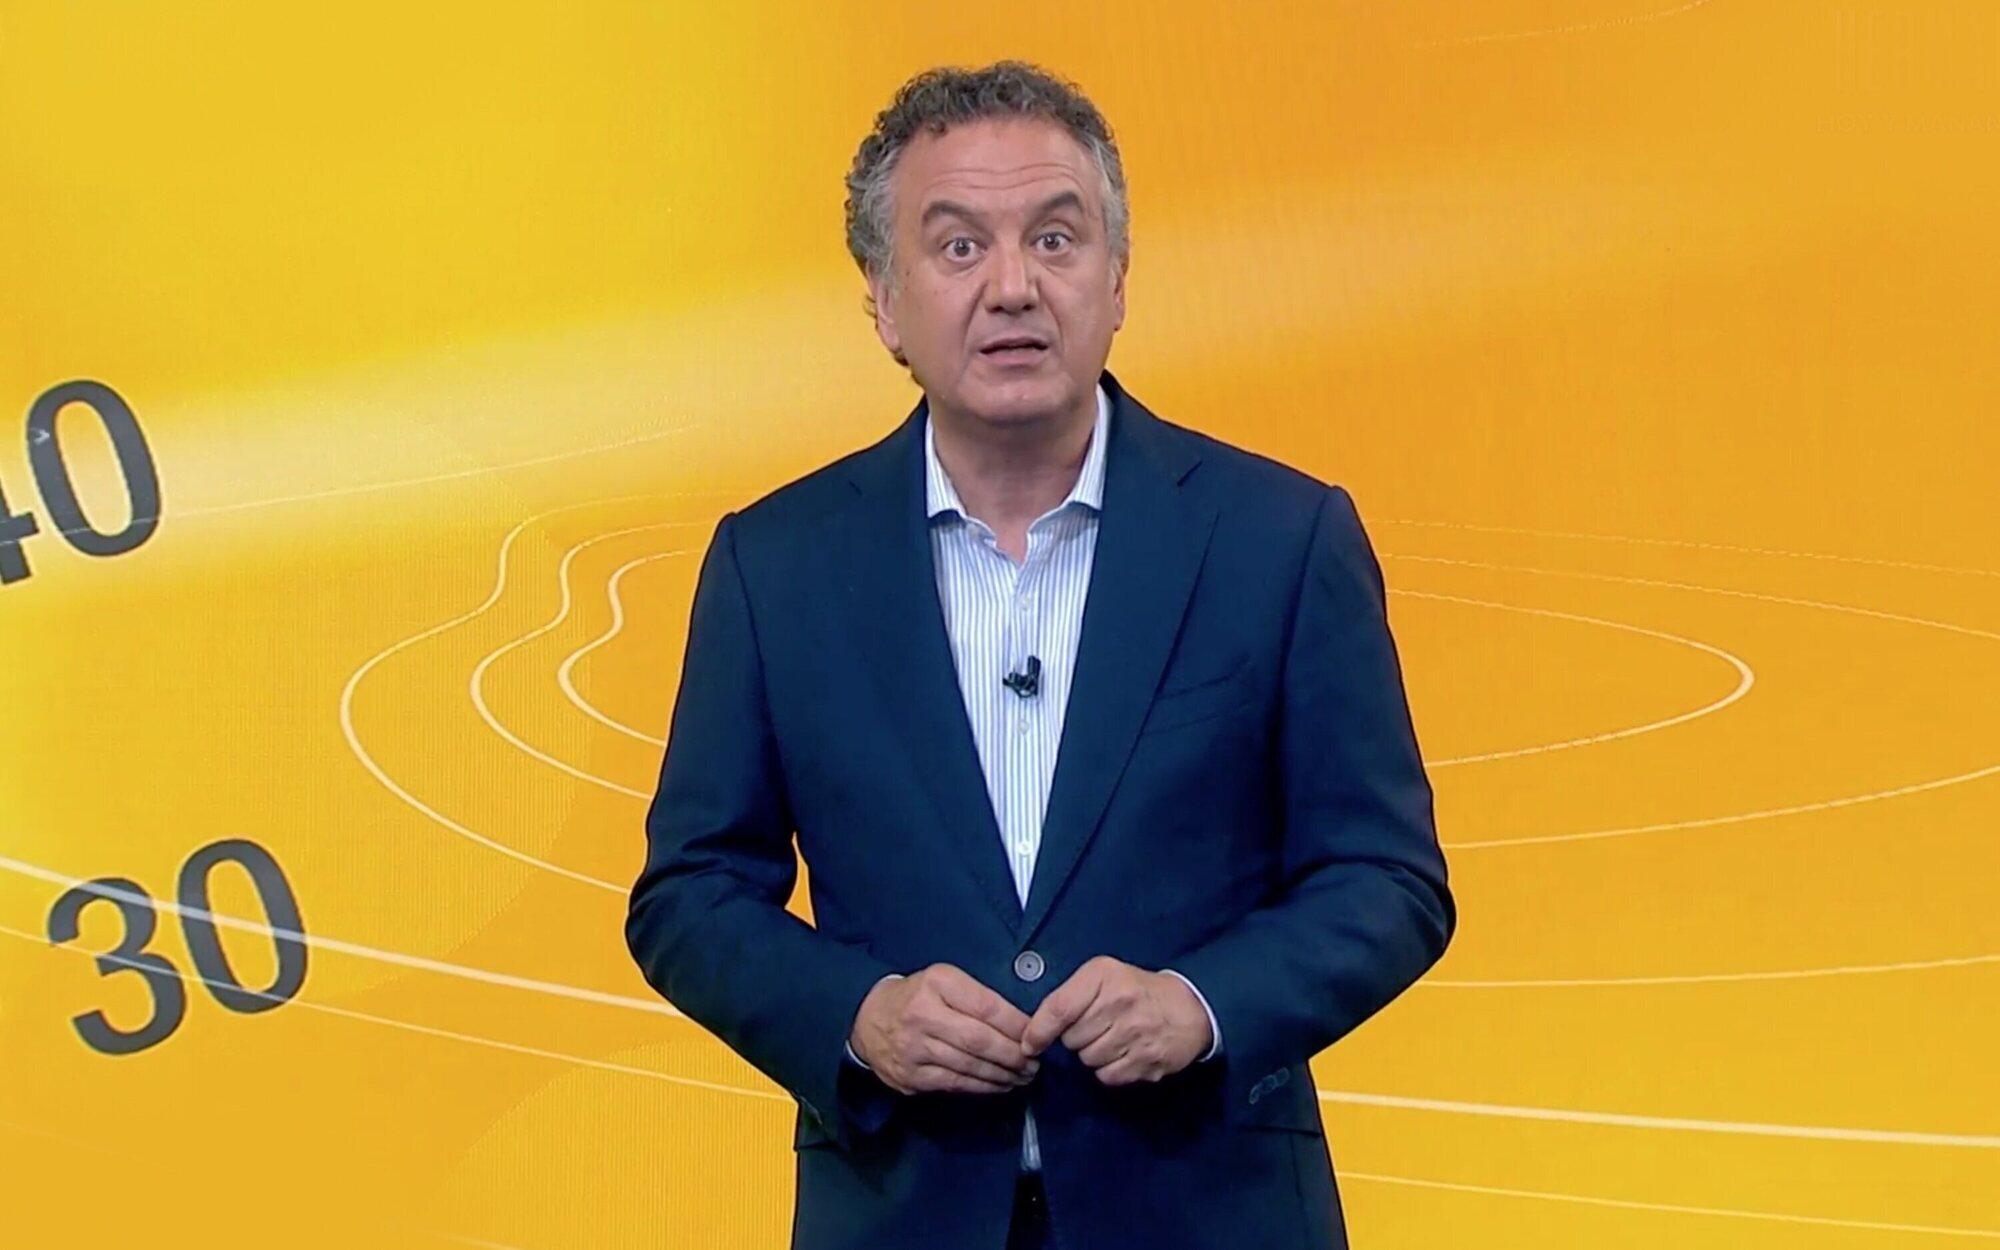 El bulo viral que acusa de manipulación a 'Antena 3 noticias', desmontado por Roberto Brasero: "Trampa"